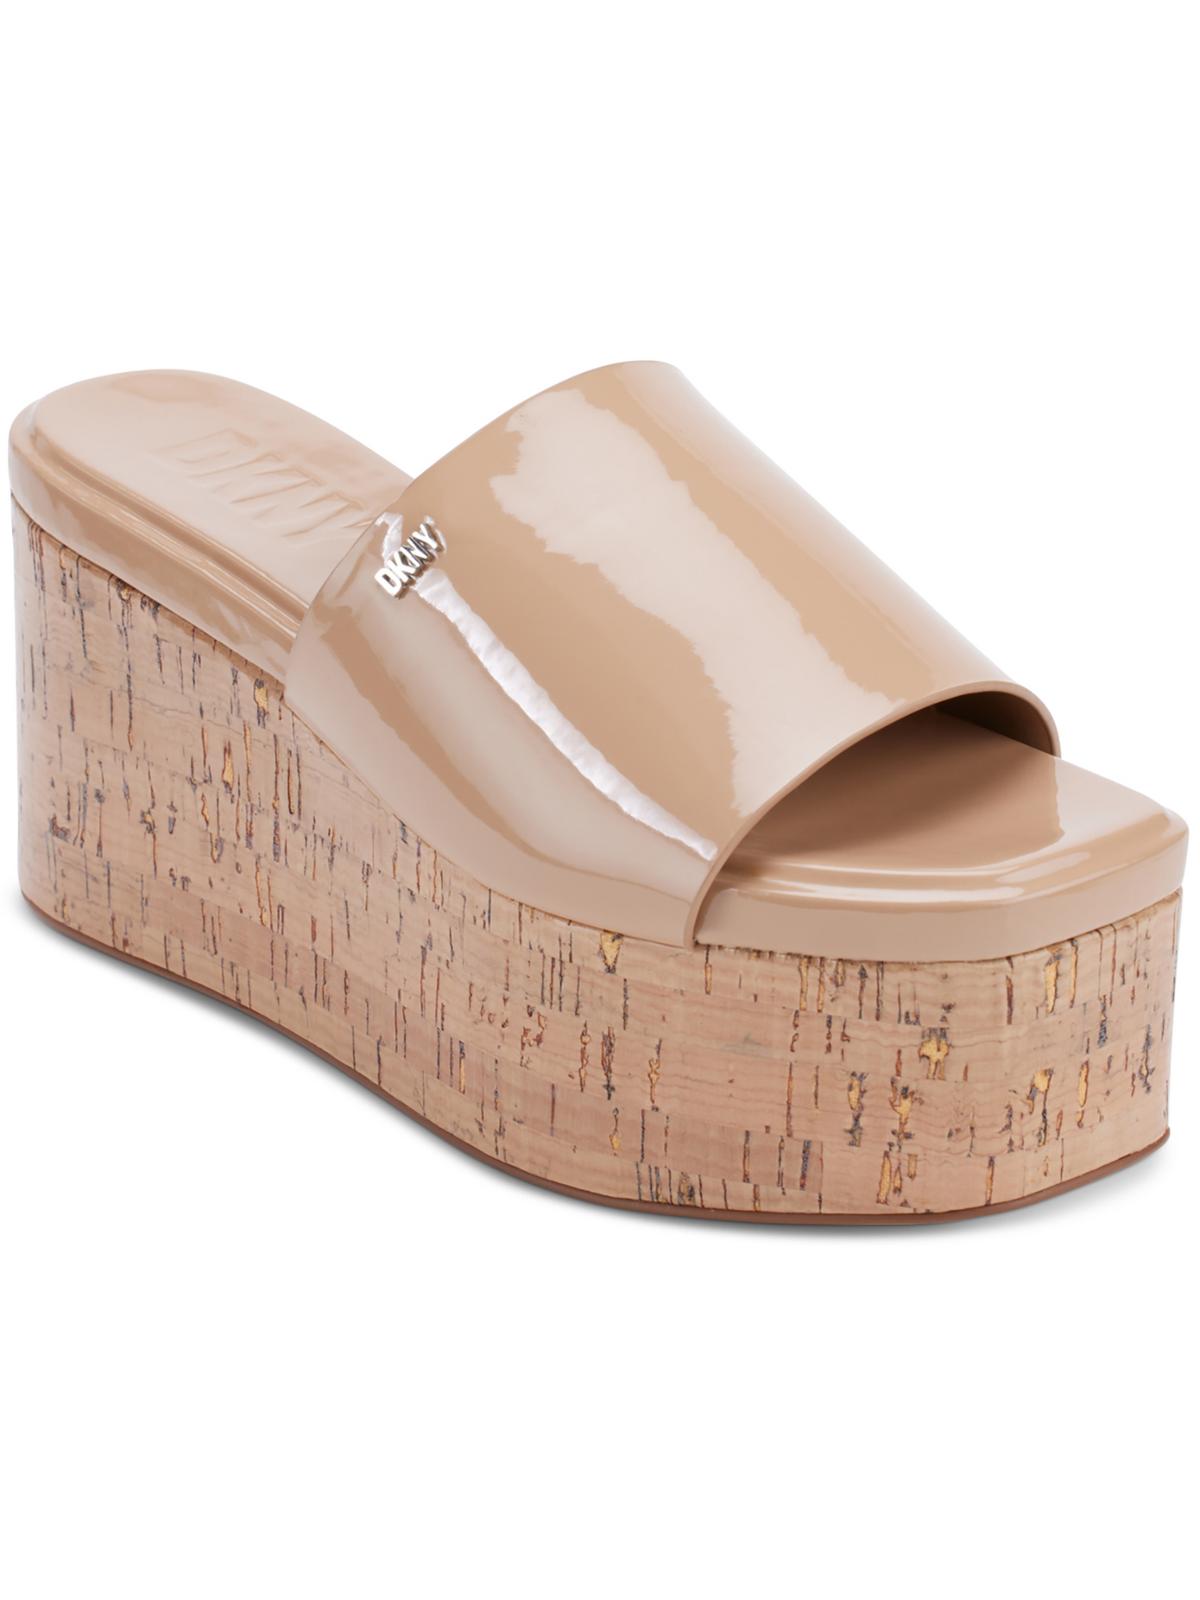 Shop Dkny Adalira Womens Platforms Warm Weather Wedge Sandals In Beige